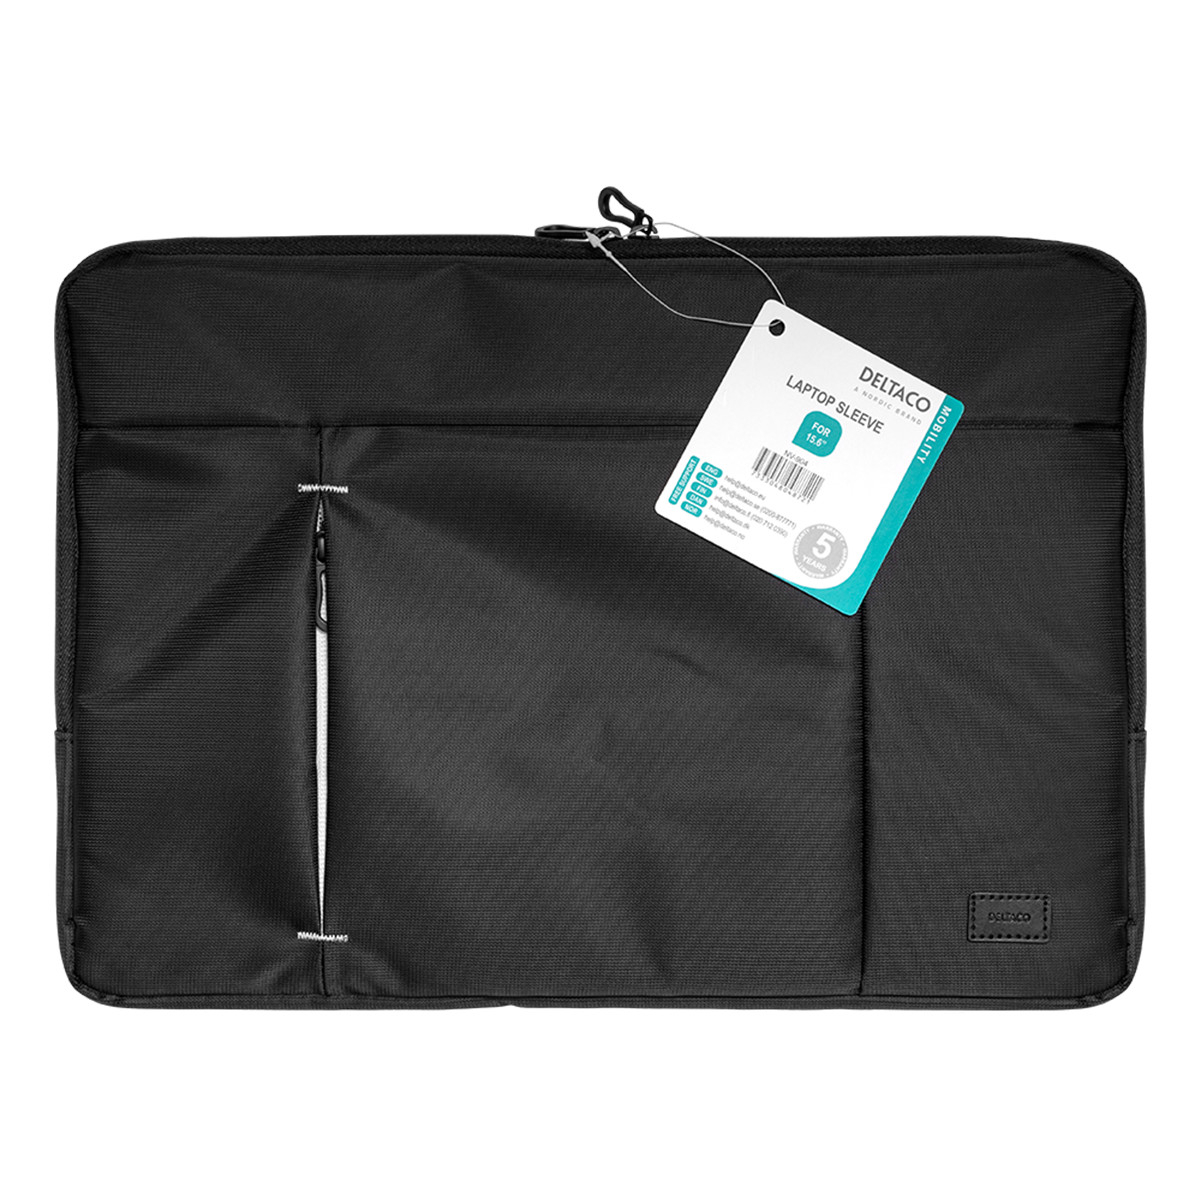 Deltaco Laptopfodral för laptops upp till 15.6 tum, svart